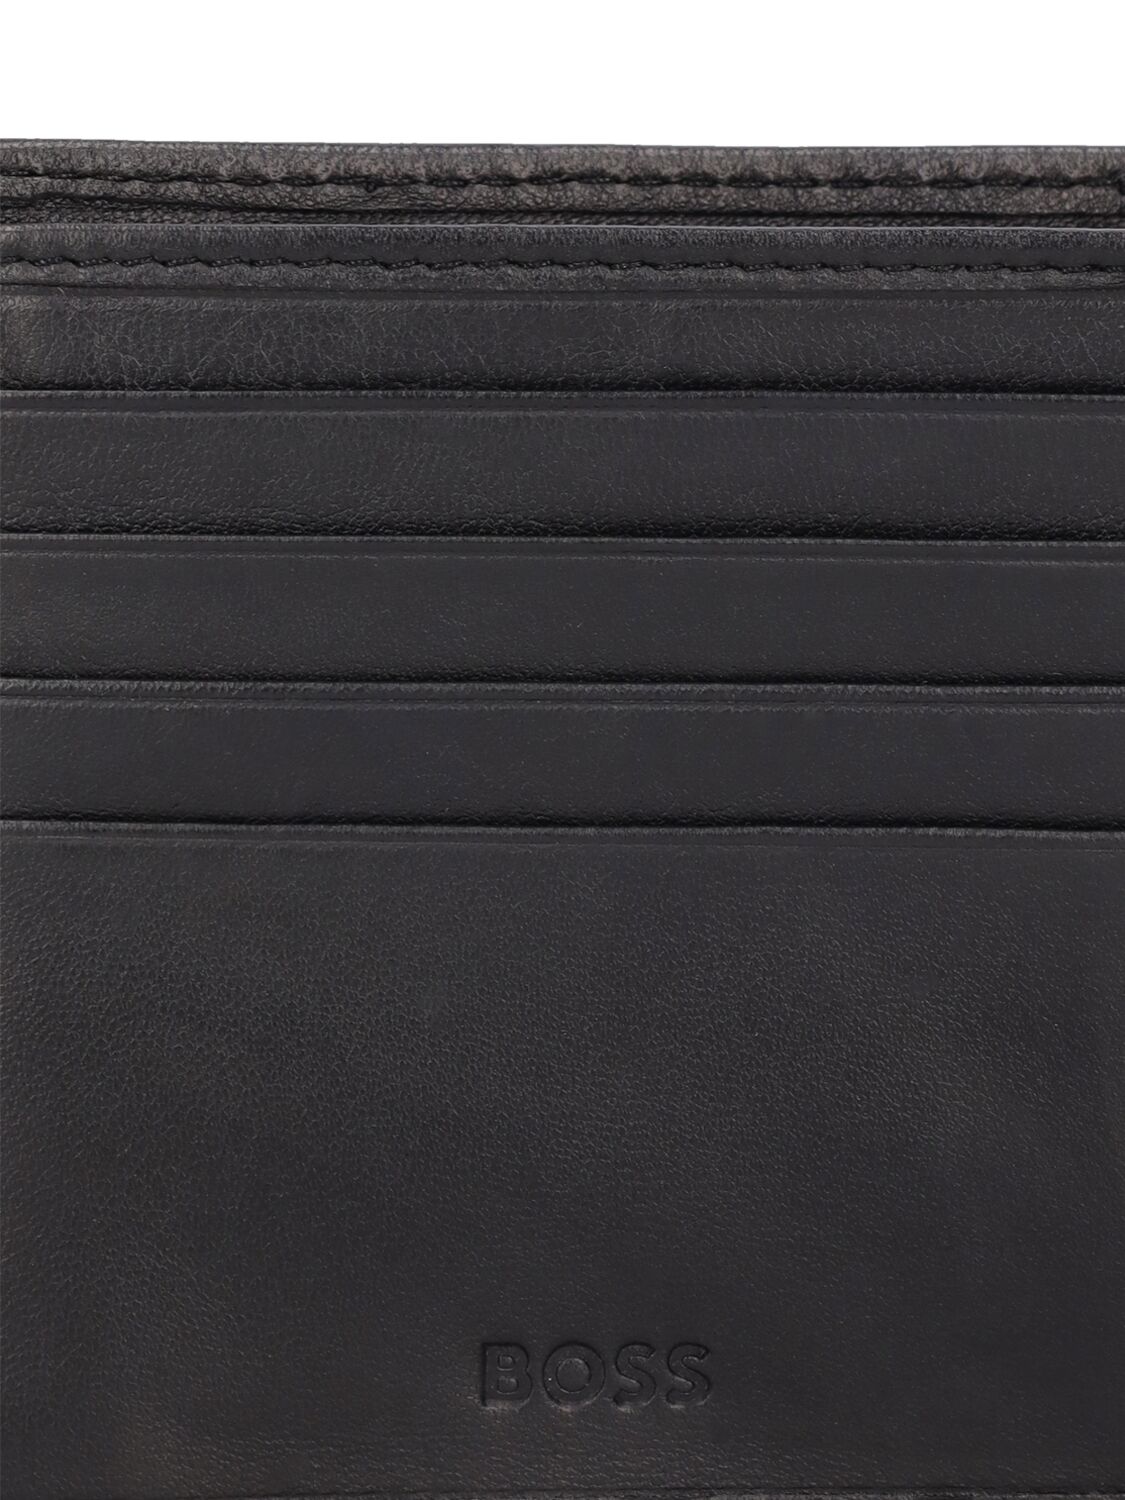 Shop Hugo Boss Randy Leather Wallet In Black